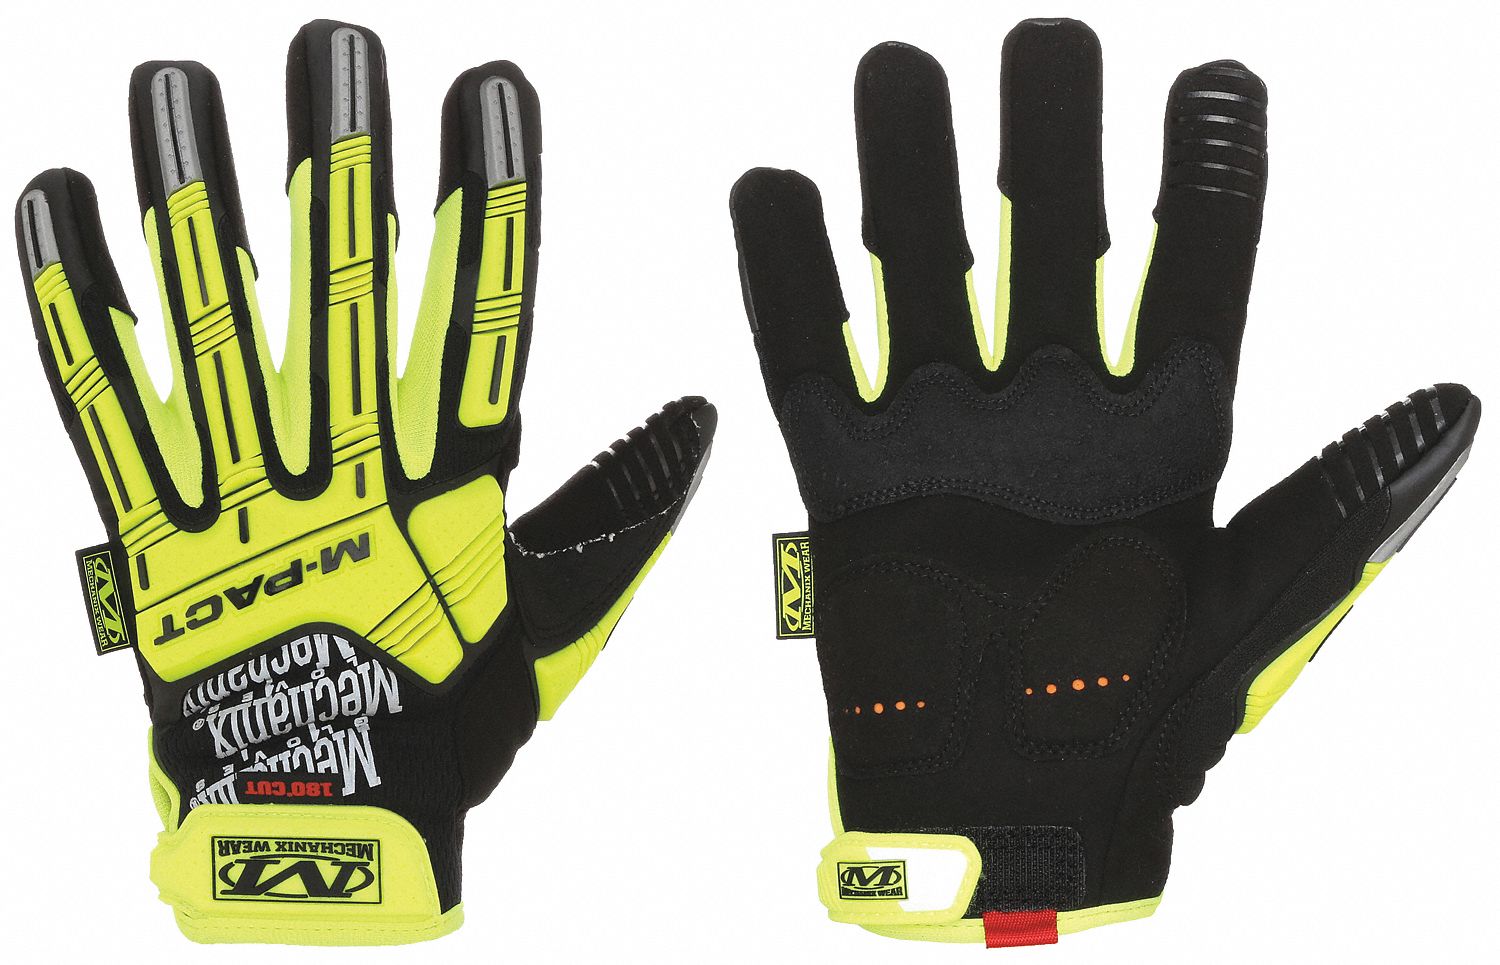 Mechanix Wear - Cut, Puncture & Abrasive-Resistant Gloves: Size